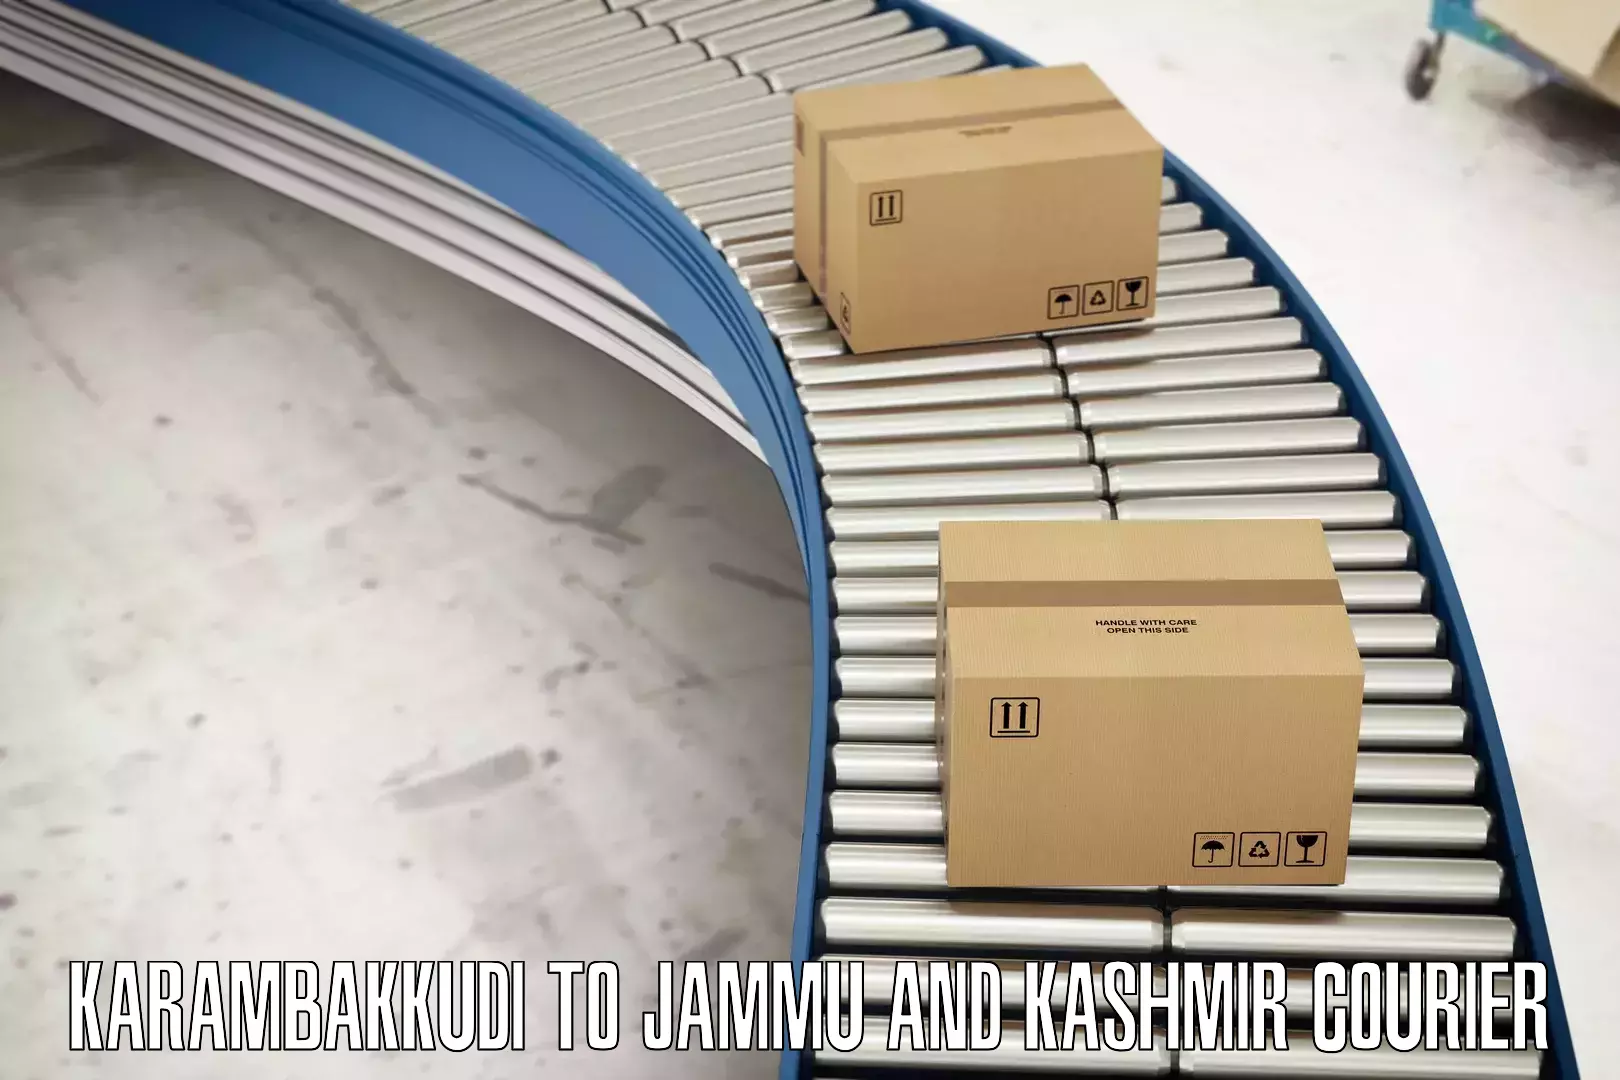 Smart parcel tracking in Karambakkudi to Kathua